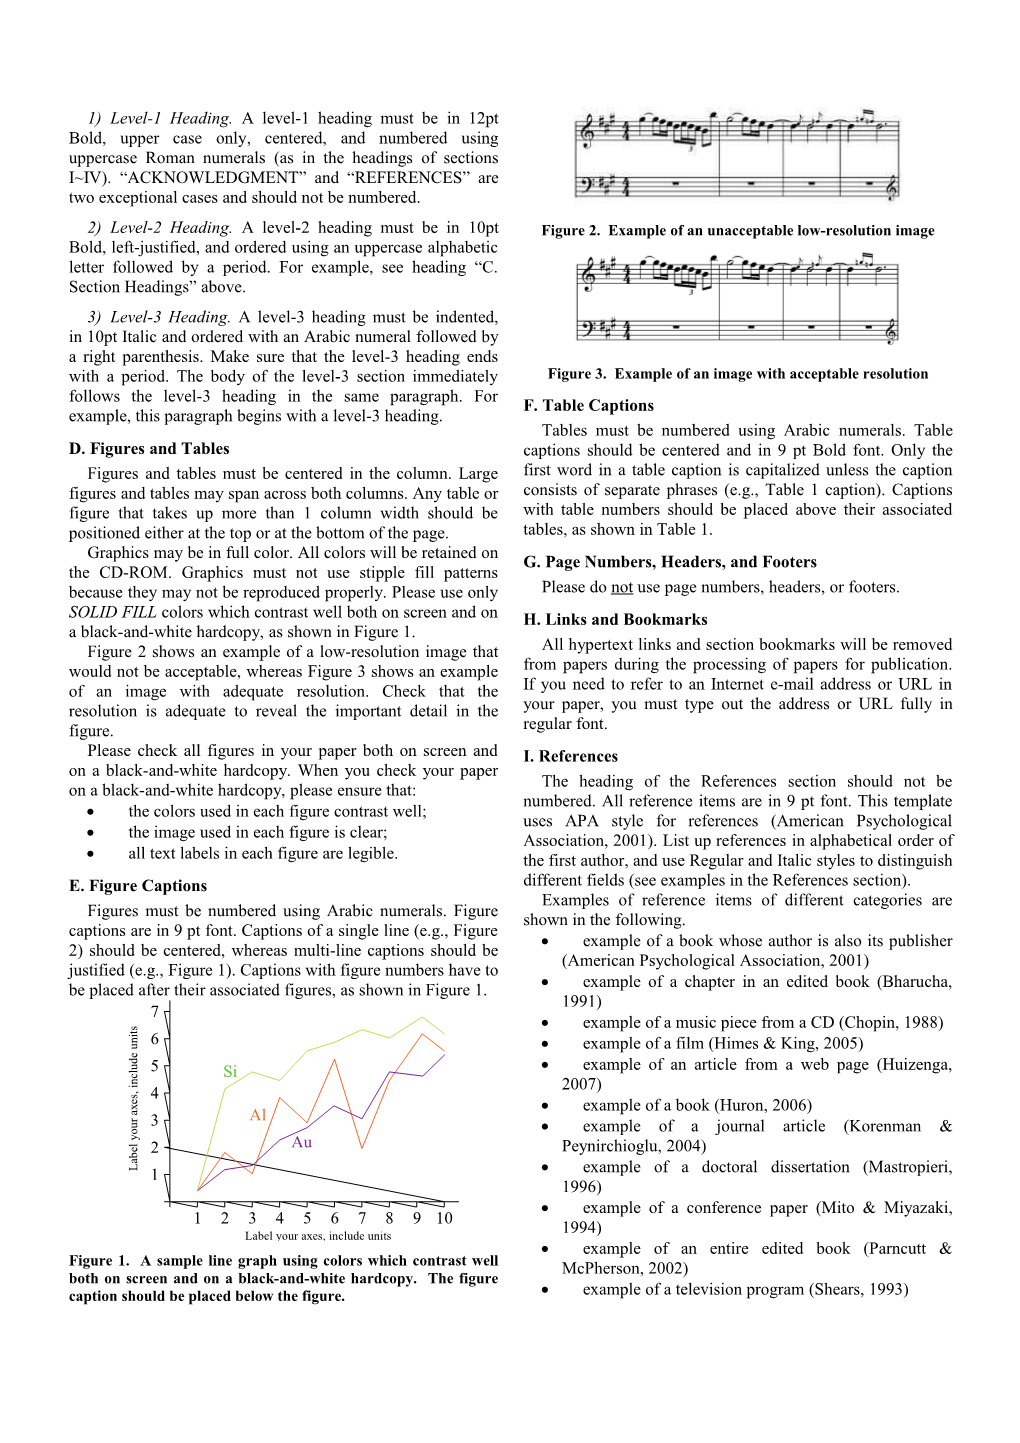 A Full-Paper Format of APSCOM 6